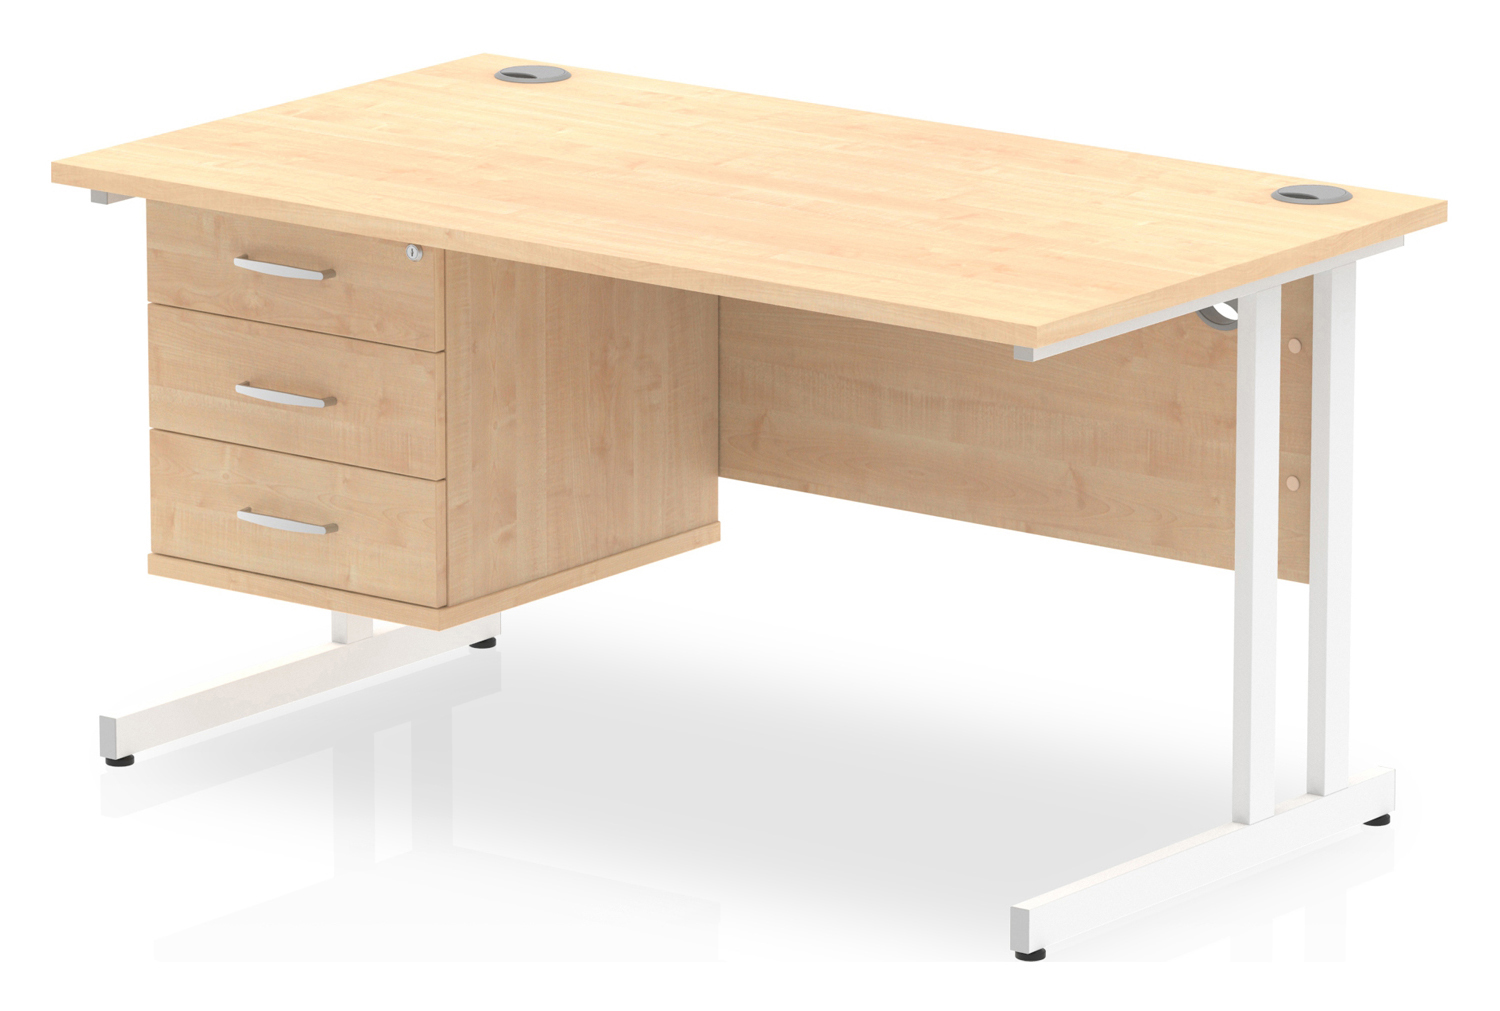 All Maple C-Leg Rectangular Office Desk 3 Drawers, 140wx80dx73h (cm), White Frame, Fully Installed